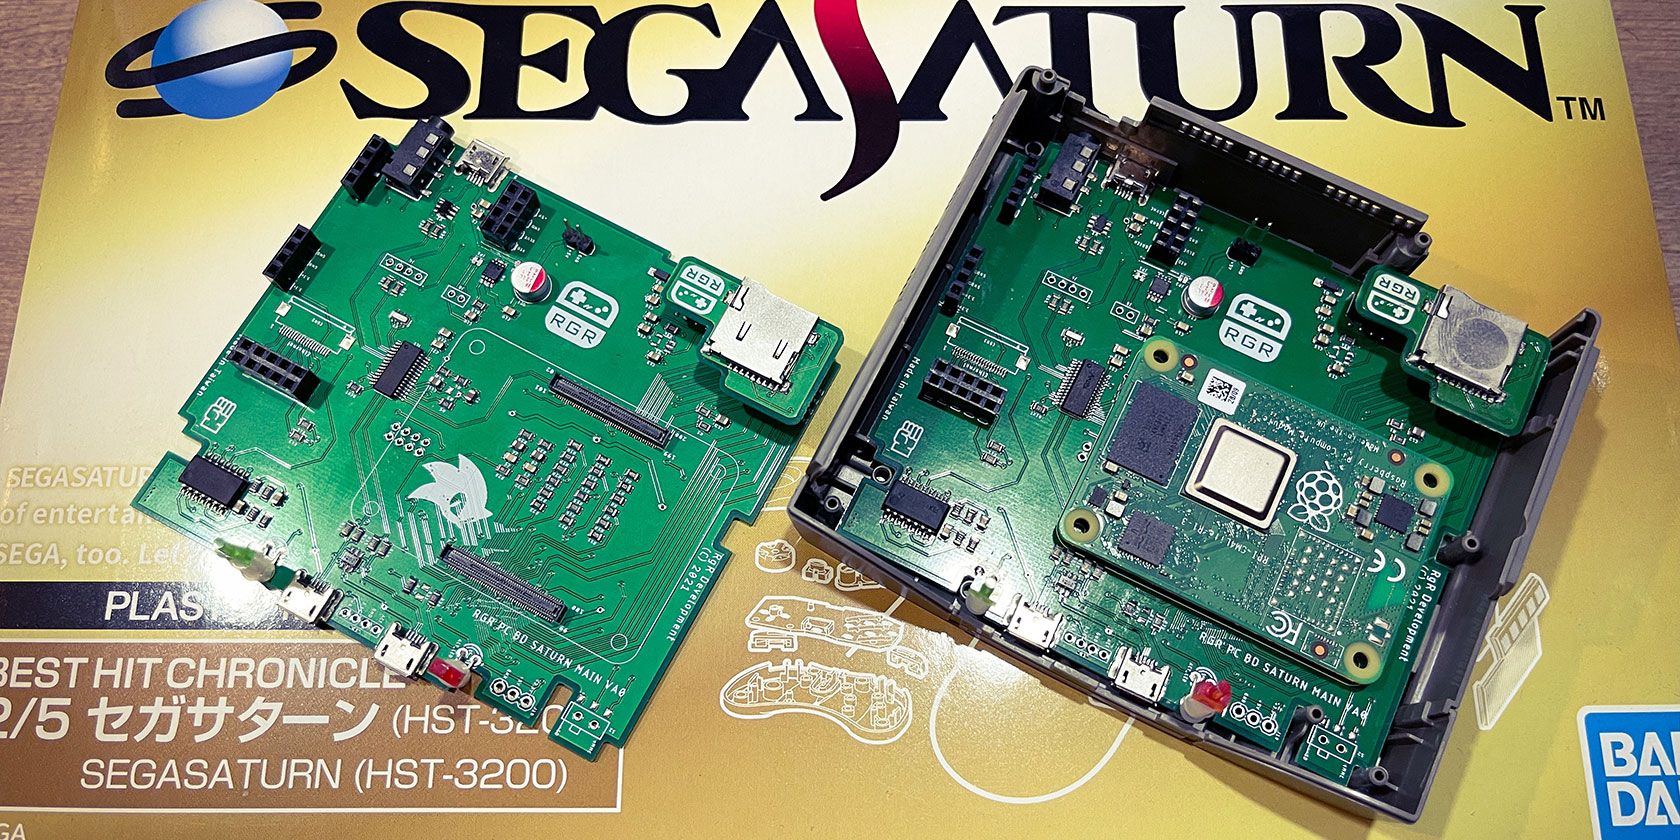 sega-saturn-cm4-retro-game-restore